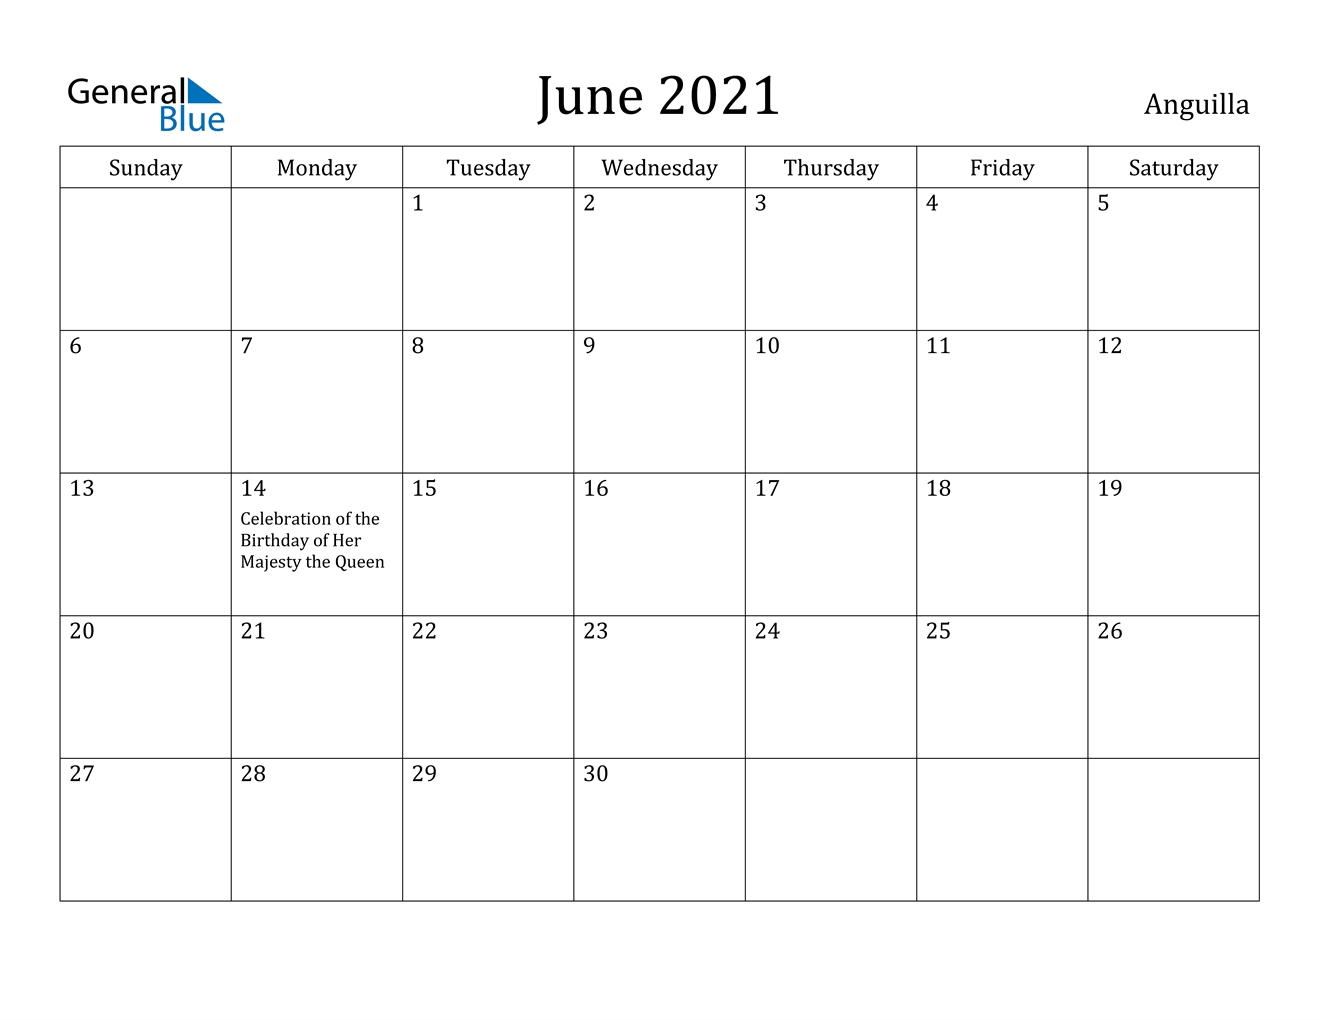 June 2021 Calendar - Anguilla Calendar From August 2020 To June 2021